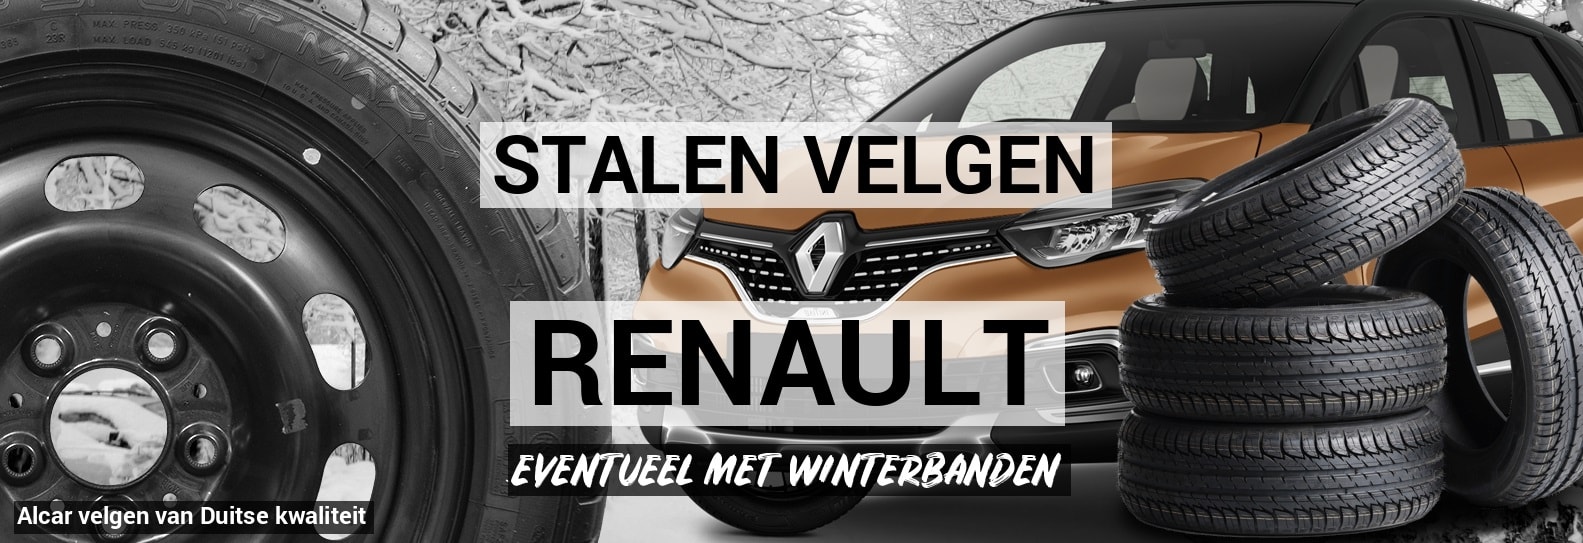 intern solide Aja Stalen velgen Renault - Autobanden Prijsvechter